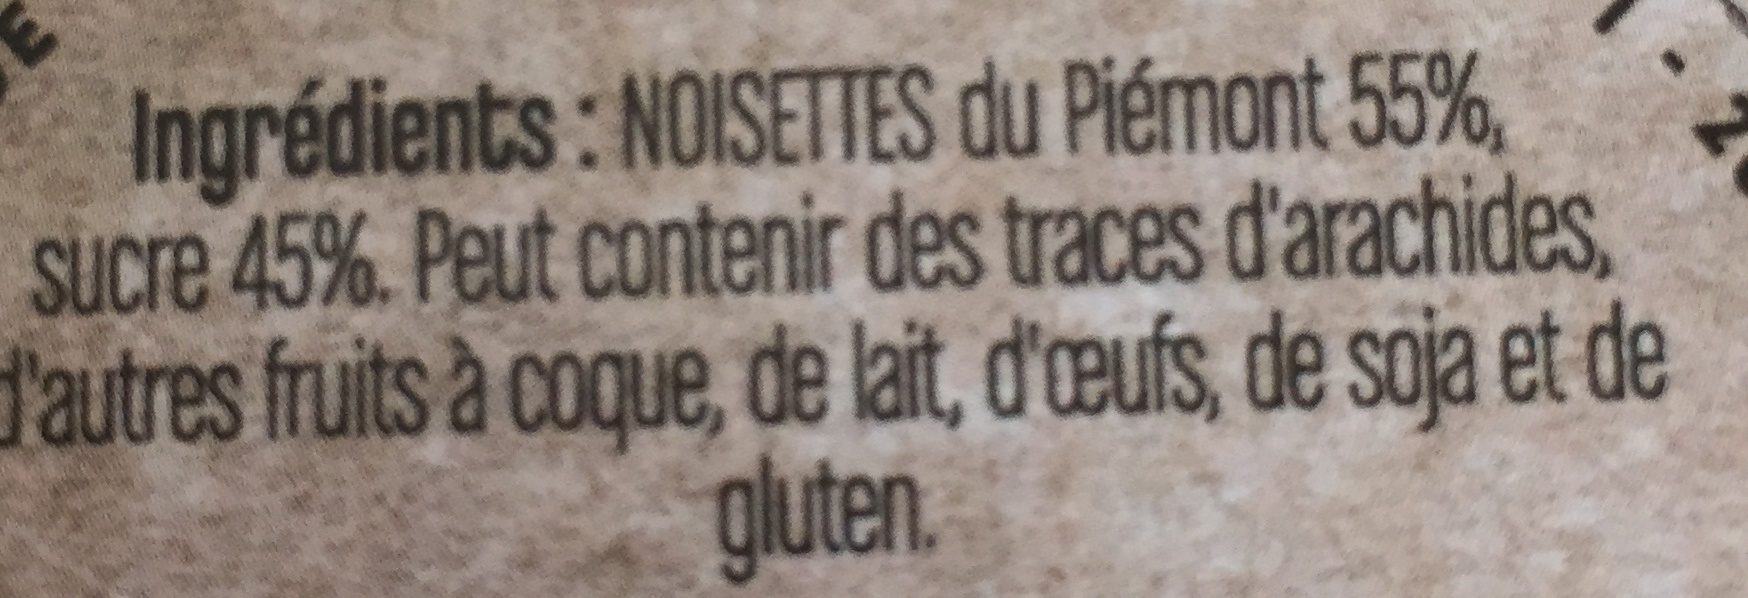 Praliné à tartiner noisettes du Piémont - Ingredients - fr